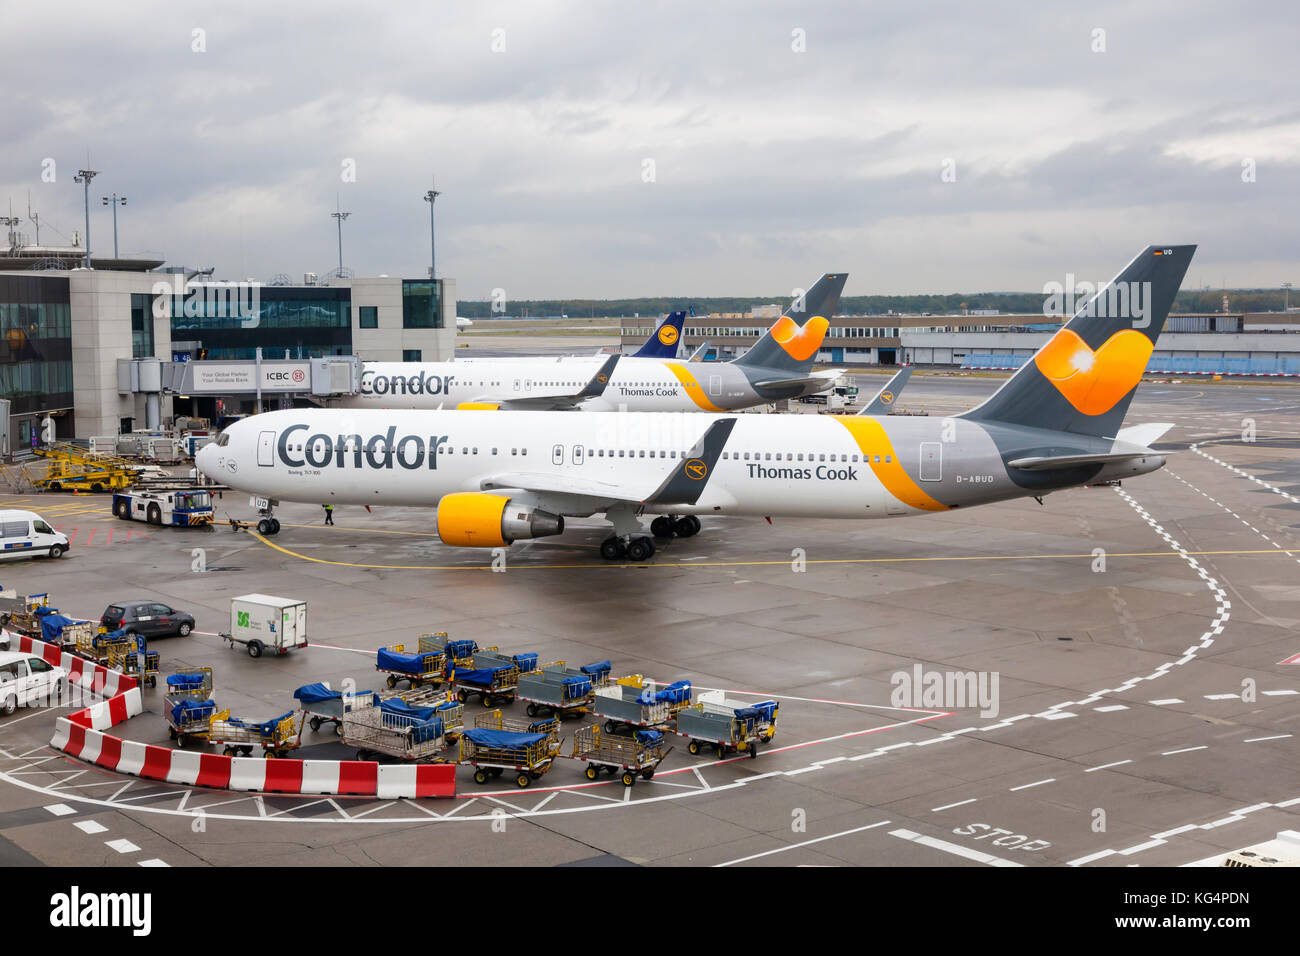 Francfort, Allemagne - 10 oct 2017 : Boeing 767-300 de la compagnie aérienne Condor à l'entrée de l'aéroport international de Francfort Banque D'Images